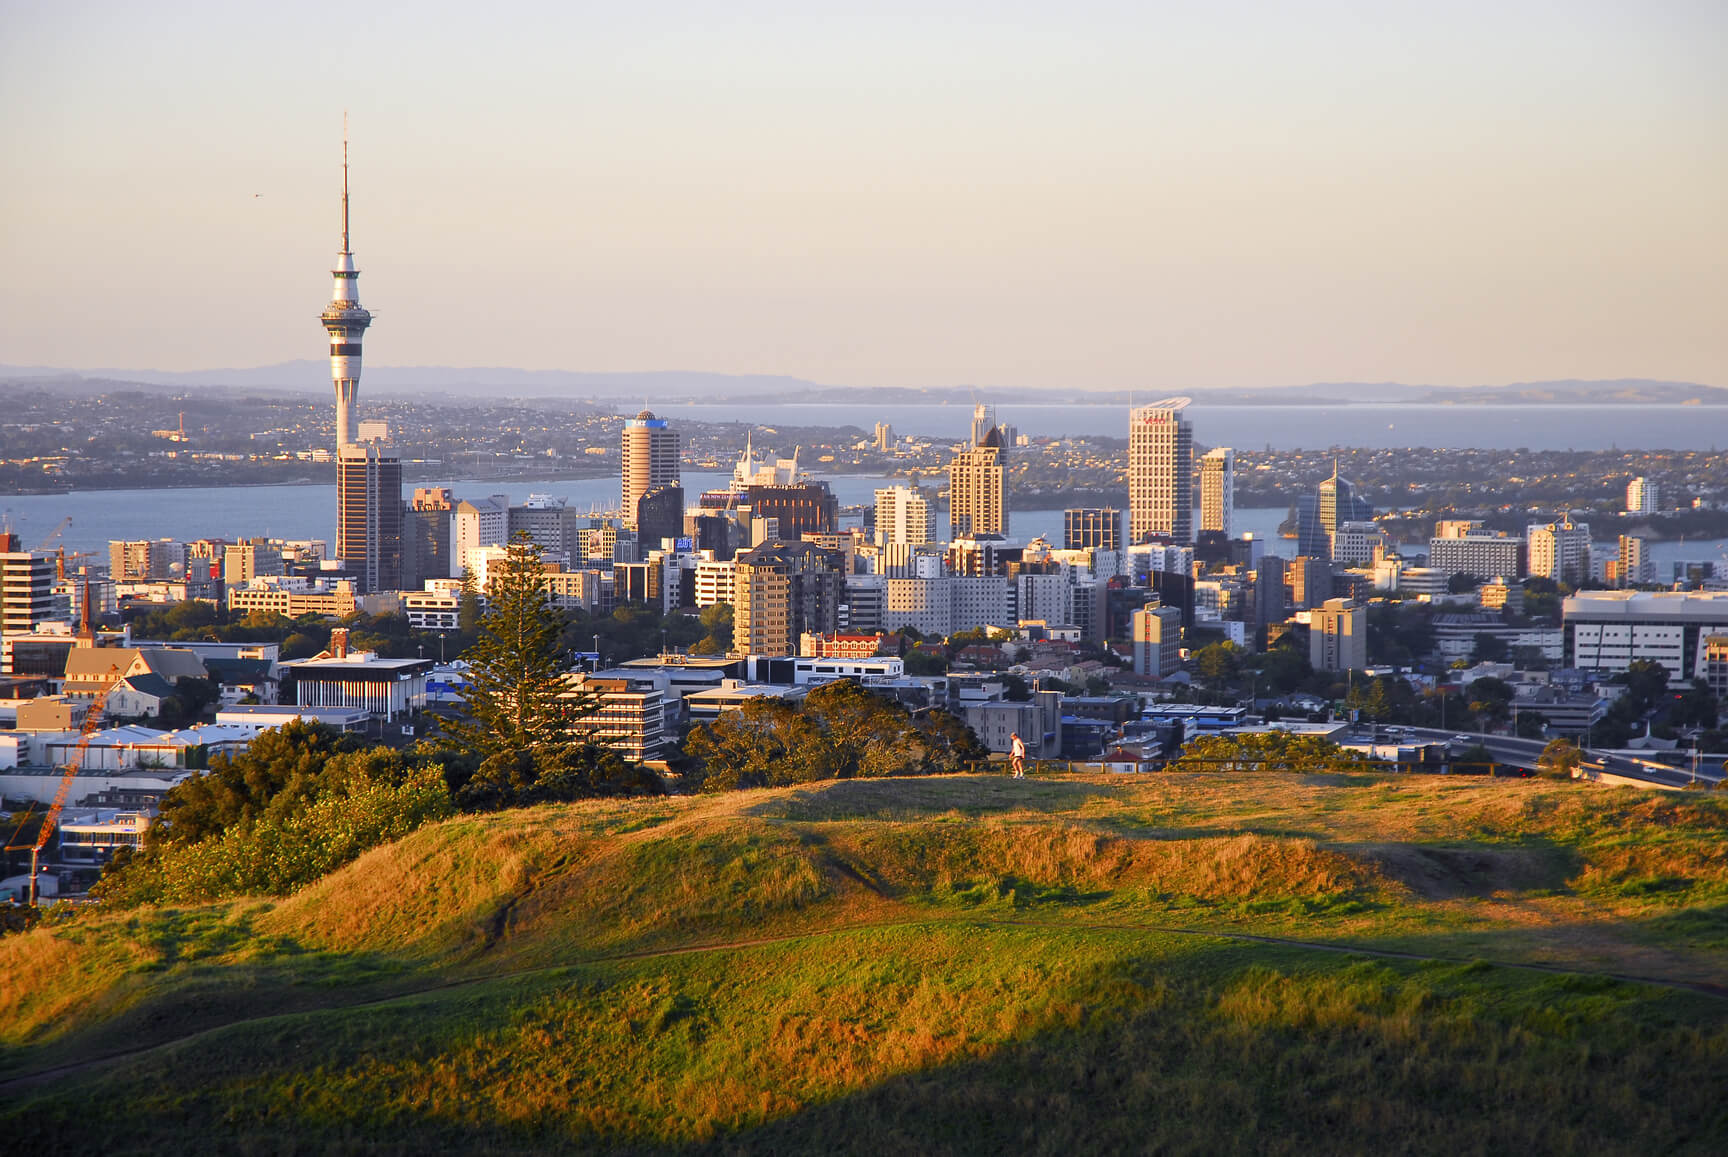 Inspiring New Zealand | Auckland, New Zealand